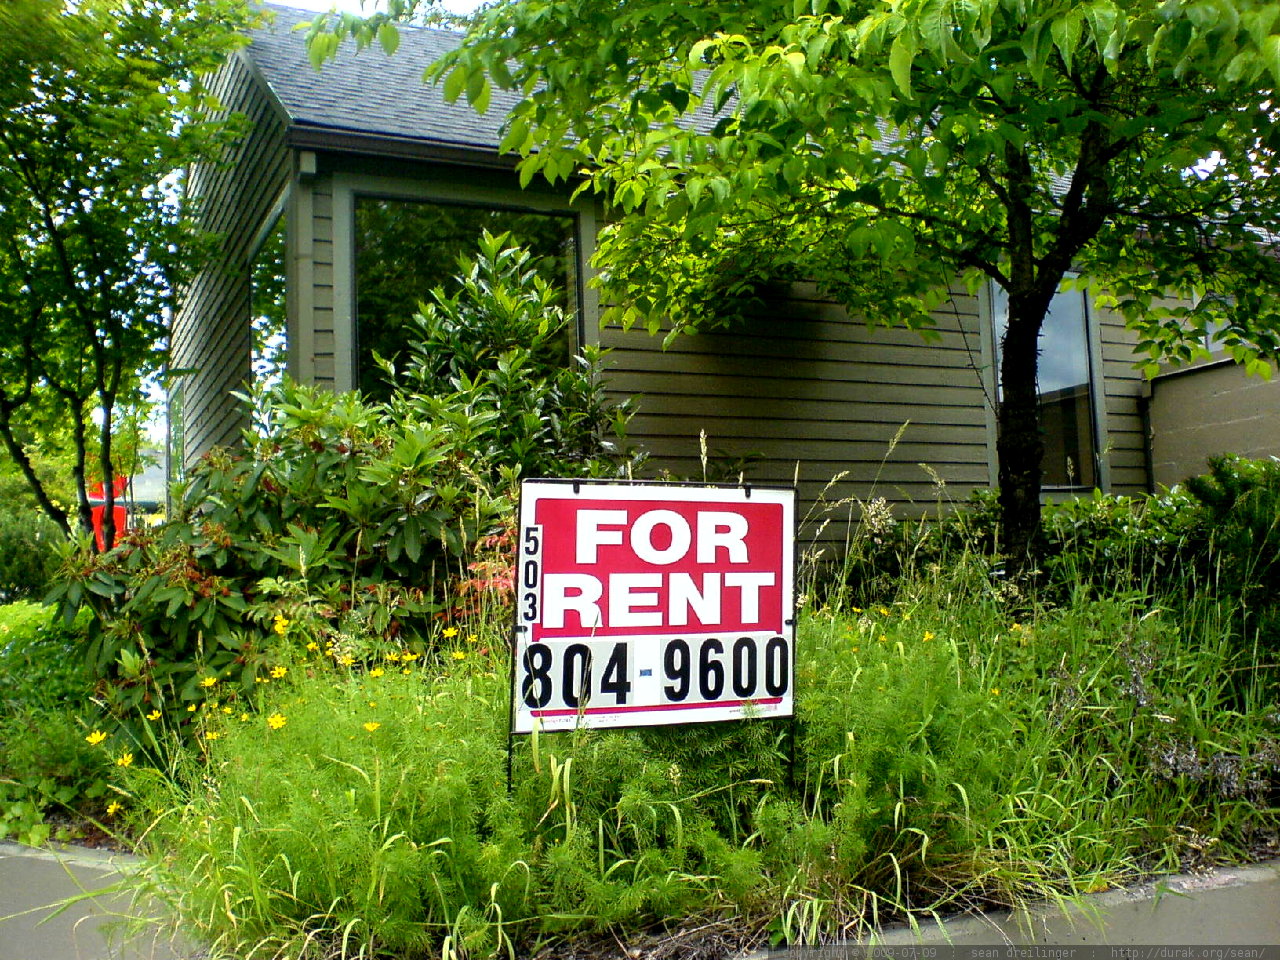 For Rent by Sean Dreilinger (Flickr)